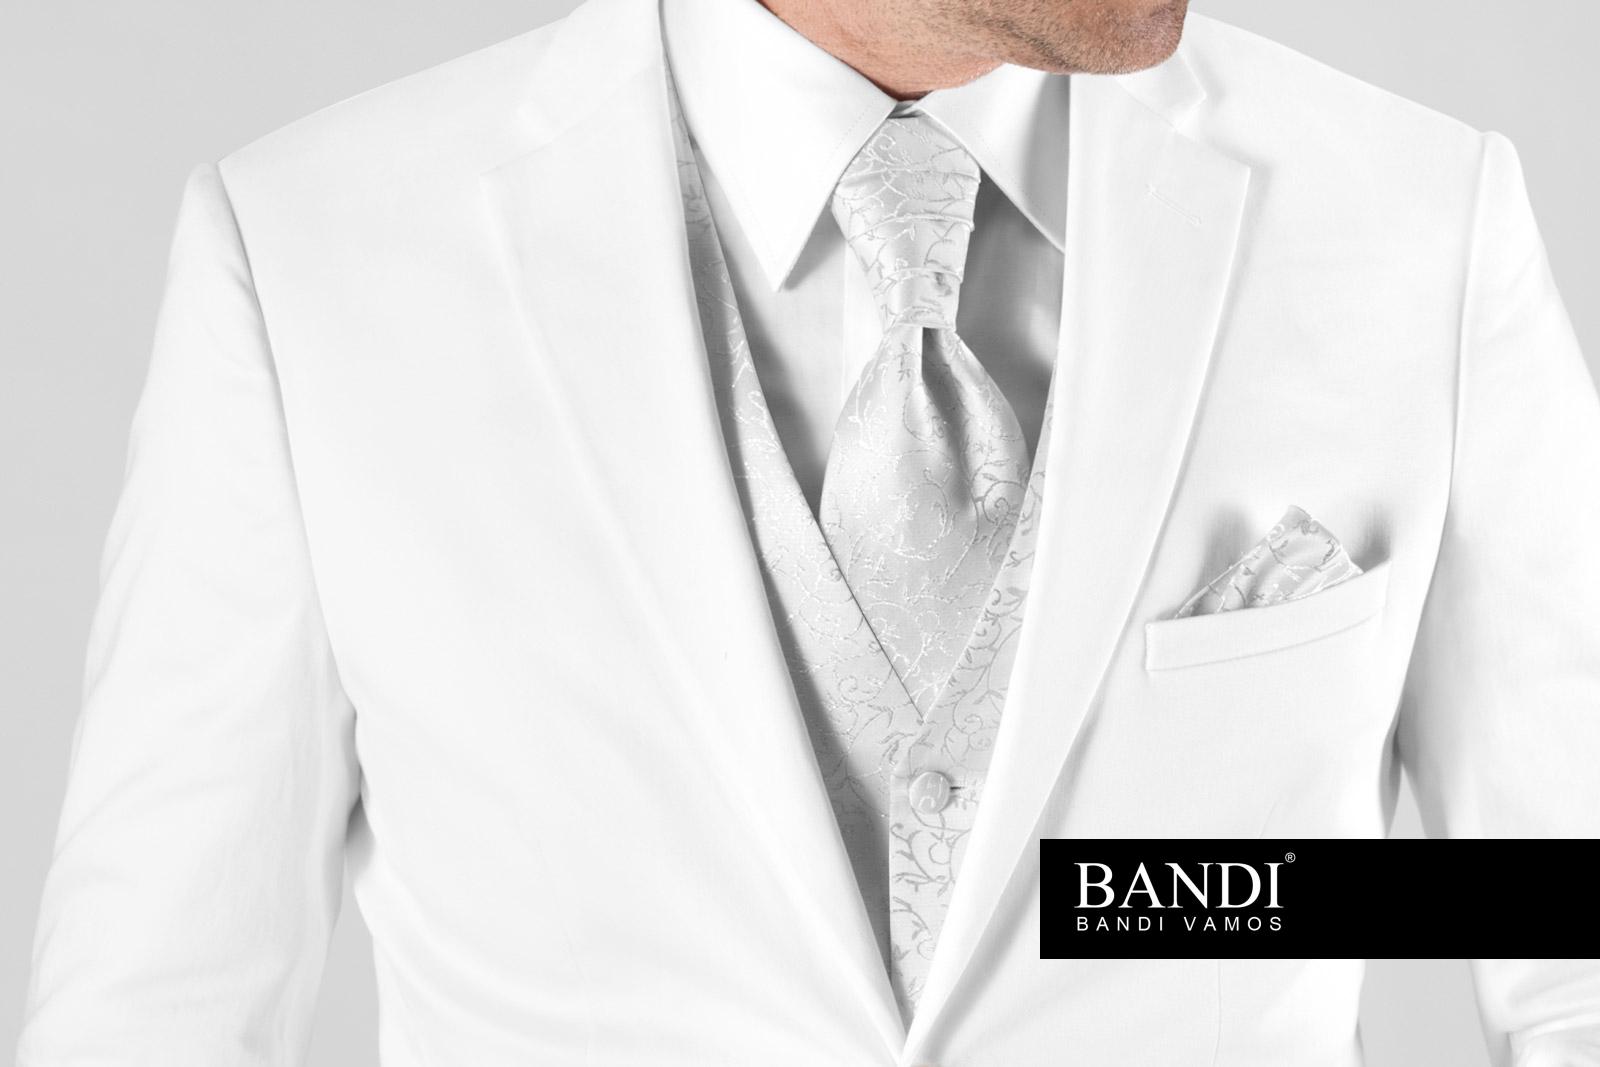 Bílý oblek pro ženicha na svatbu?